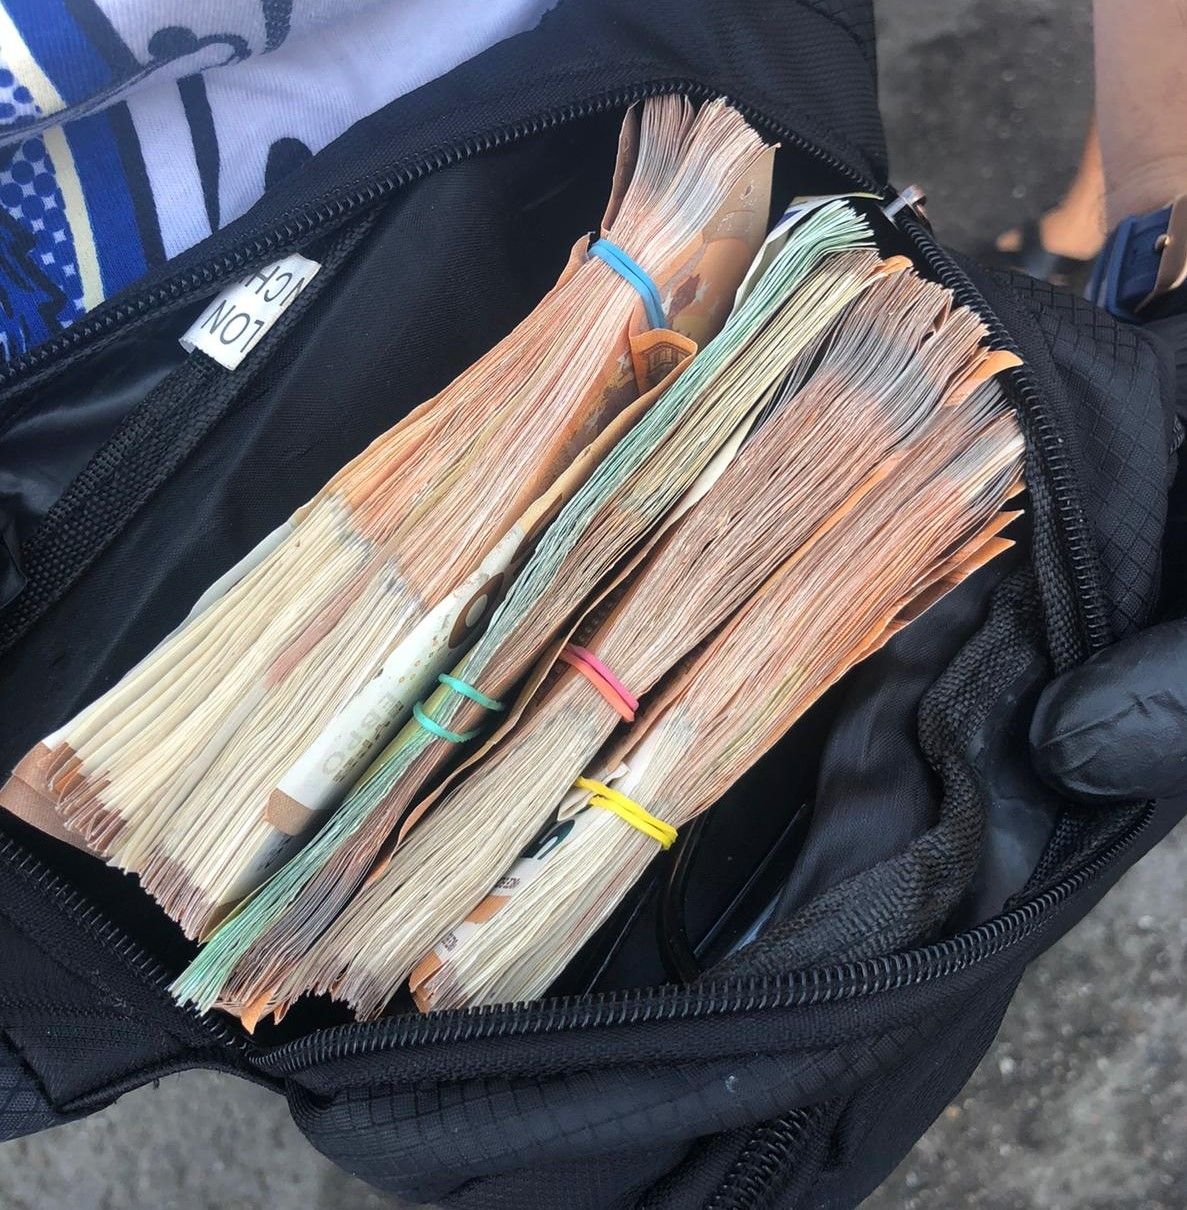 O borsetă cu 13.000 de euro uitată într-un local din Pecica „a făcut picioare” şi a ajuns tocmai în... Germania